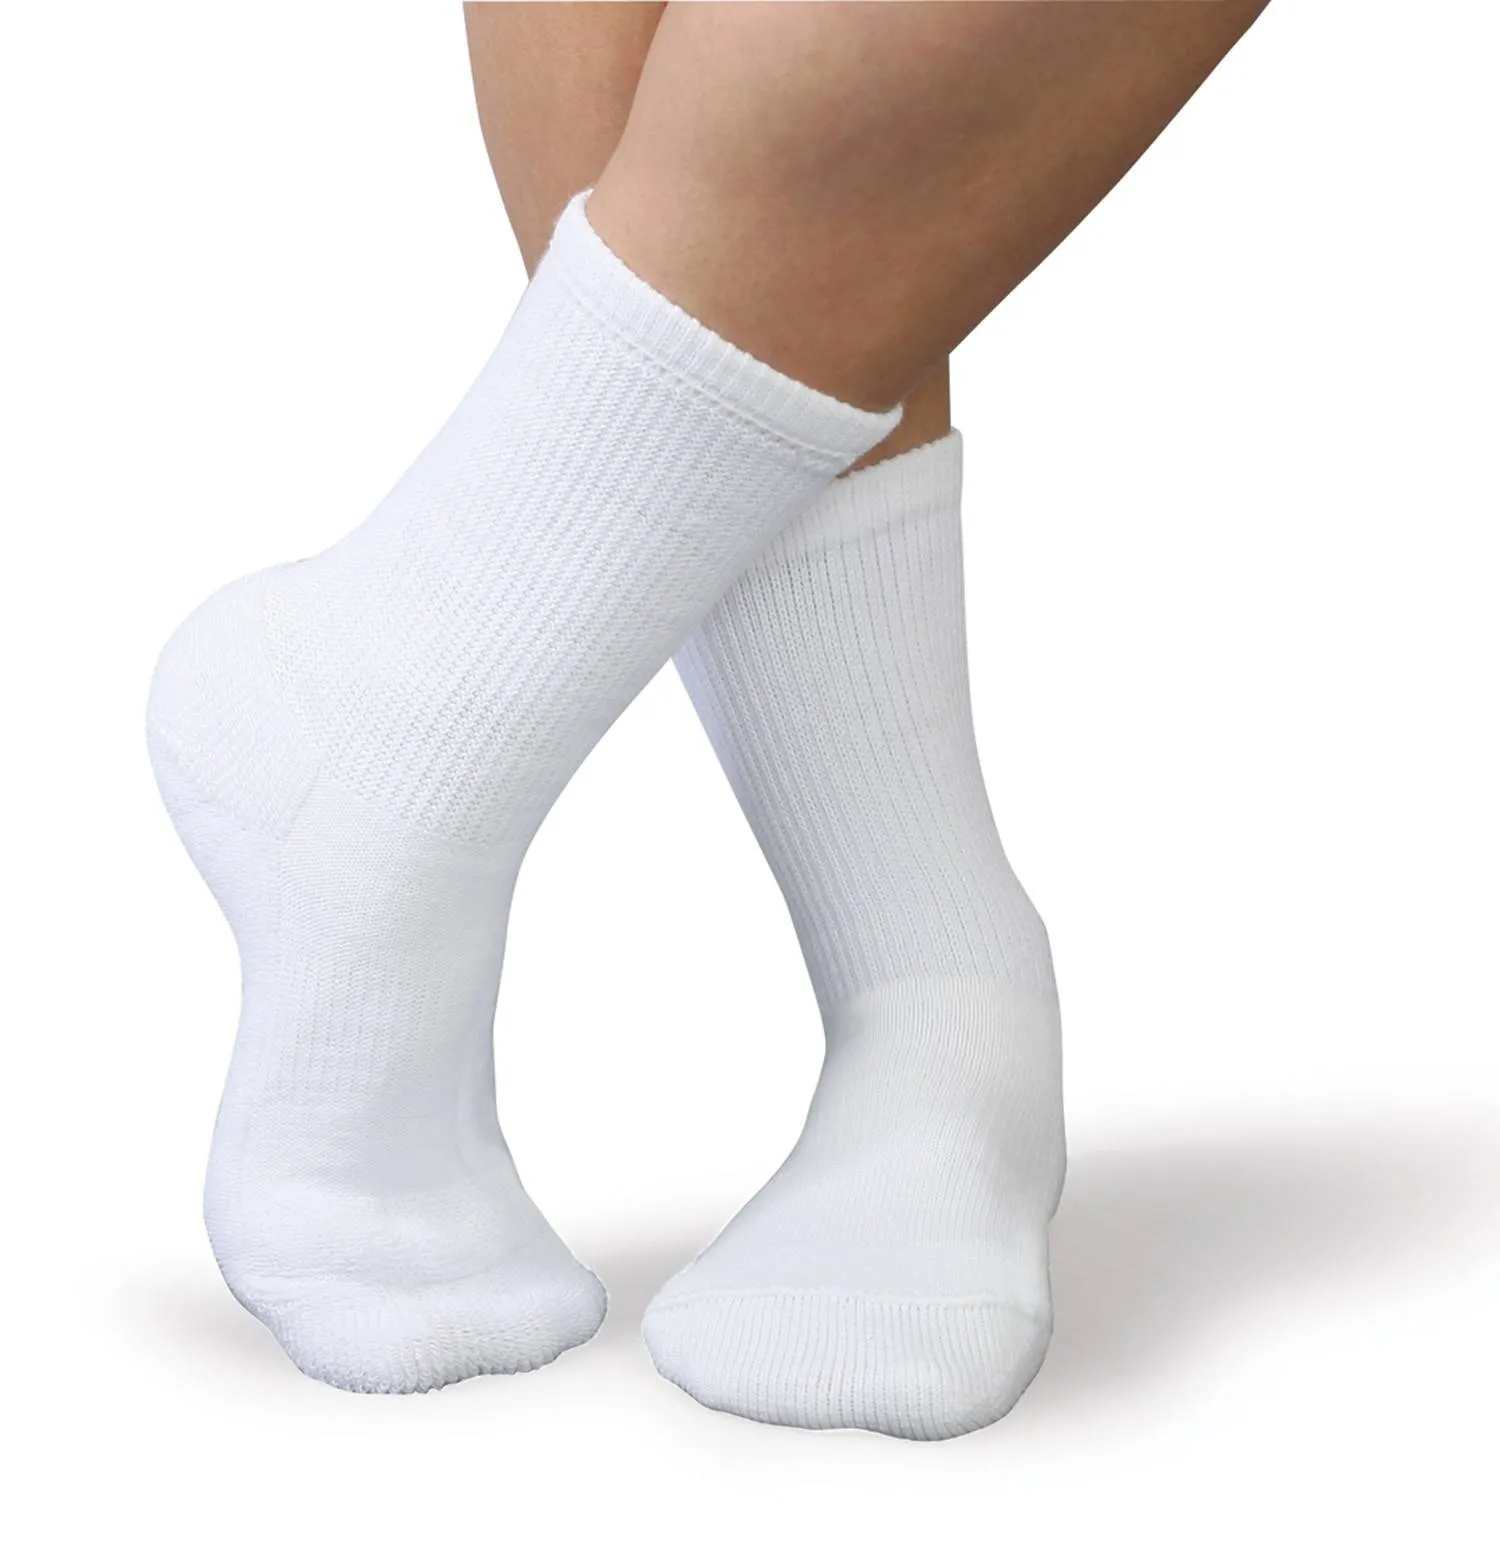 Цена на носки выросла сначала на 24. Носки Morrah "25-151" белые высокие. Белые носки. Длинные белые носки. Носки женские белые.